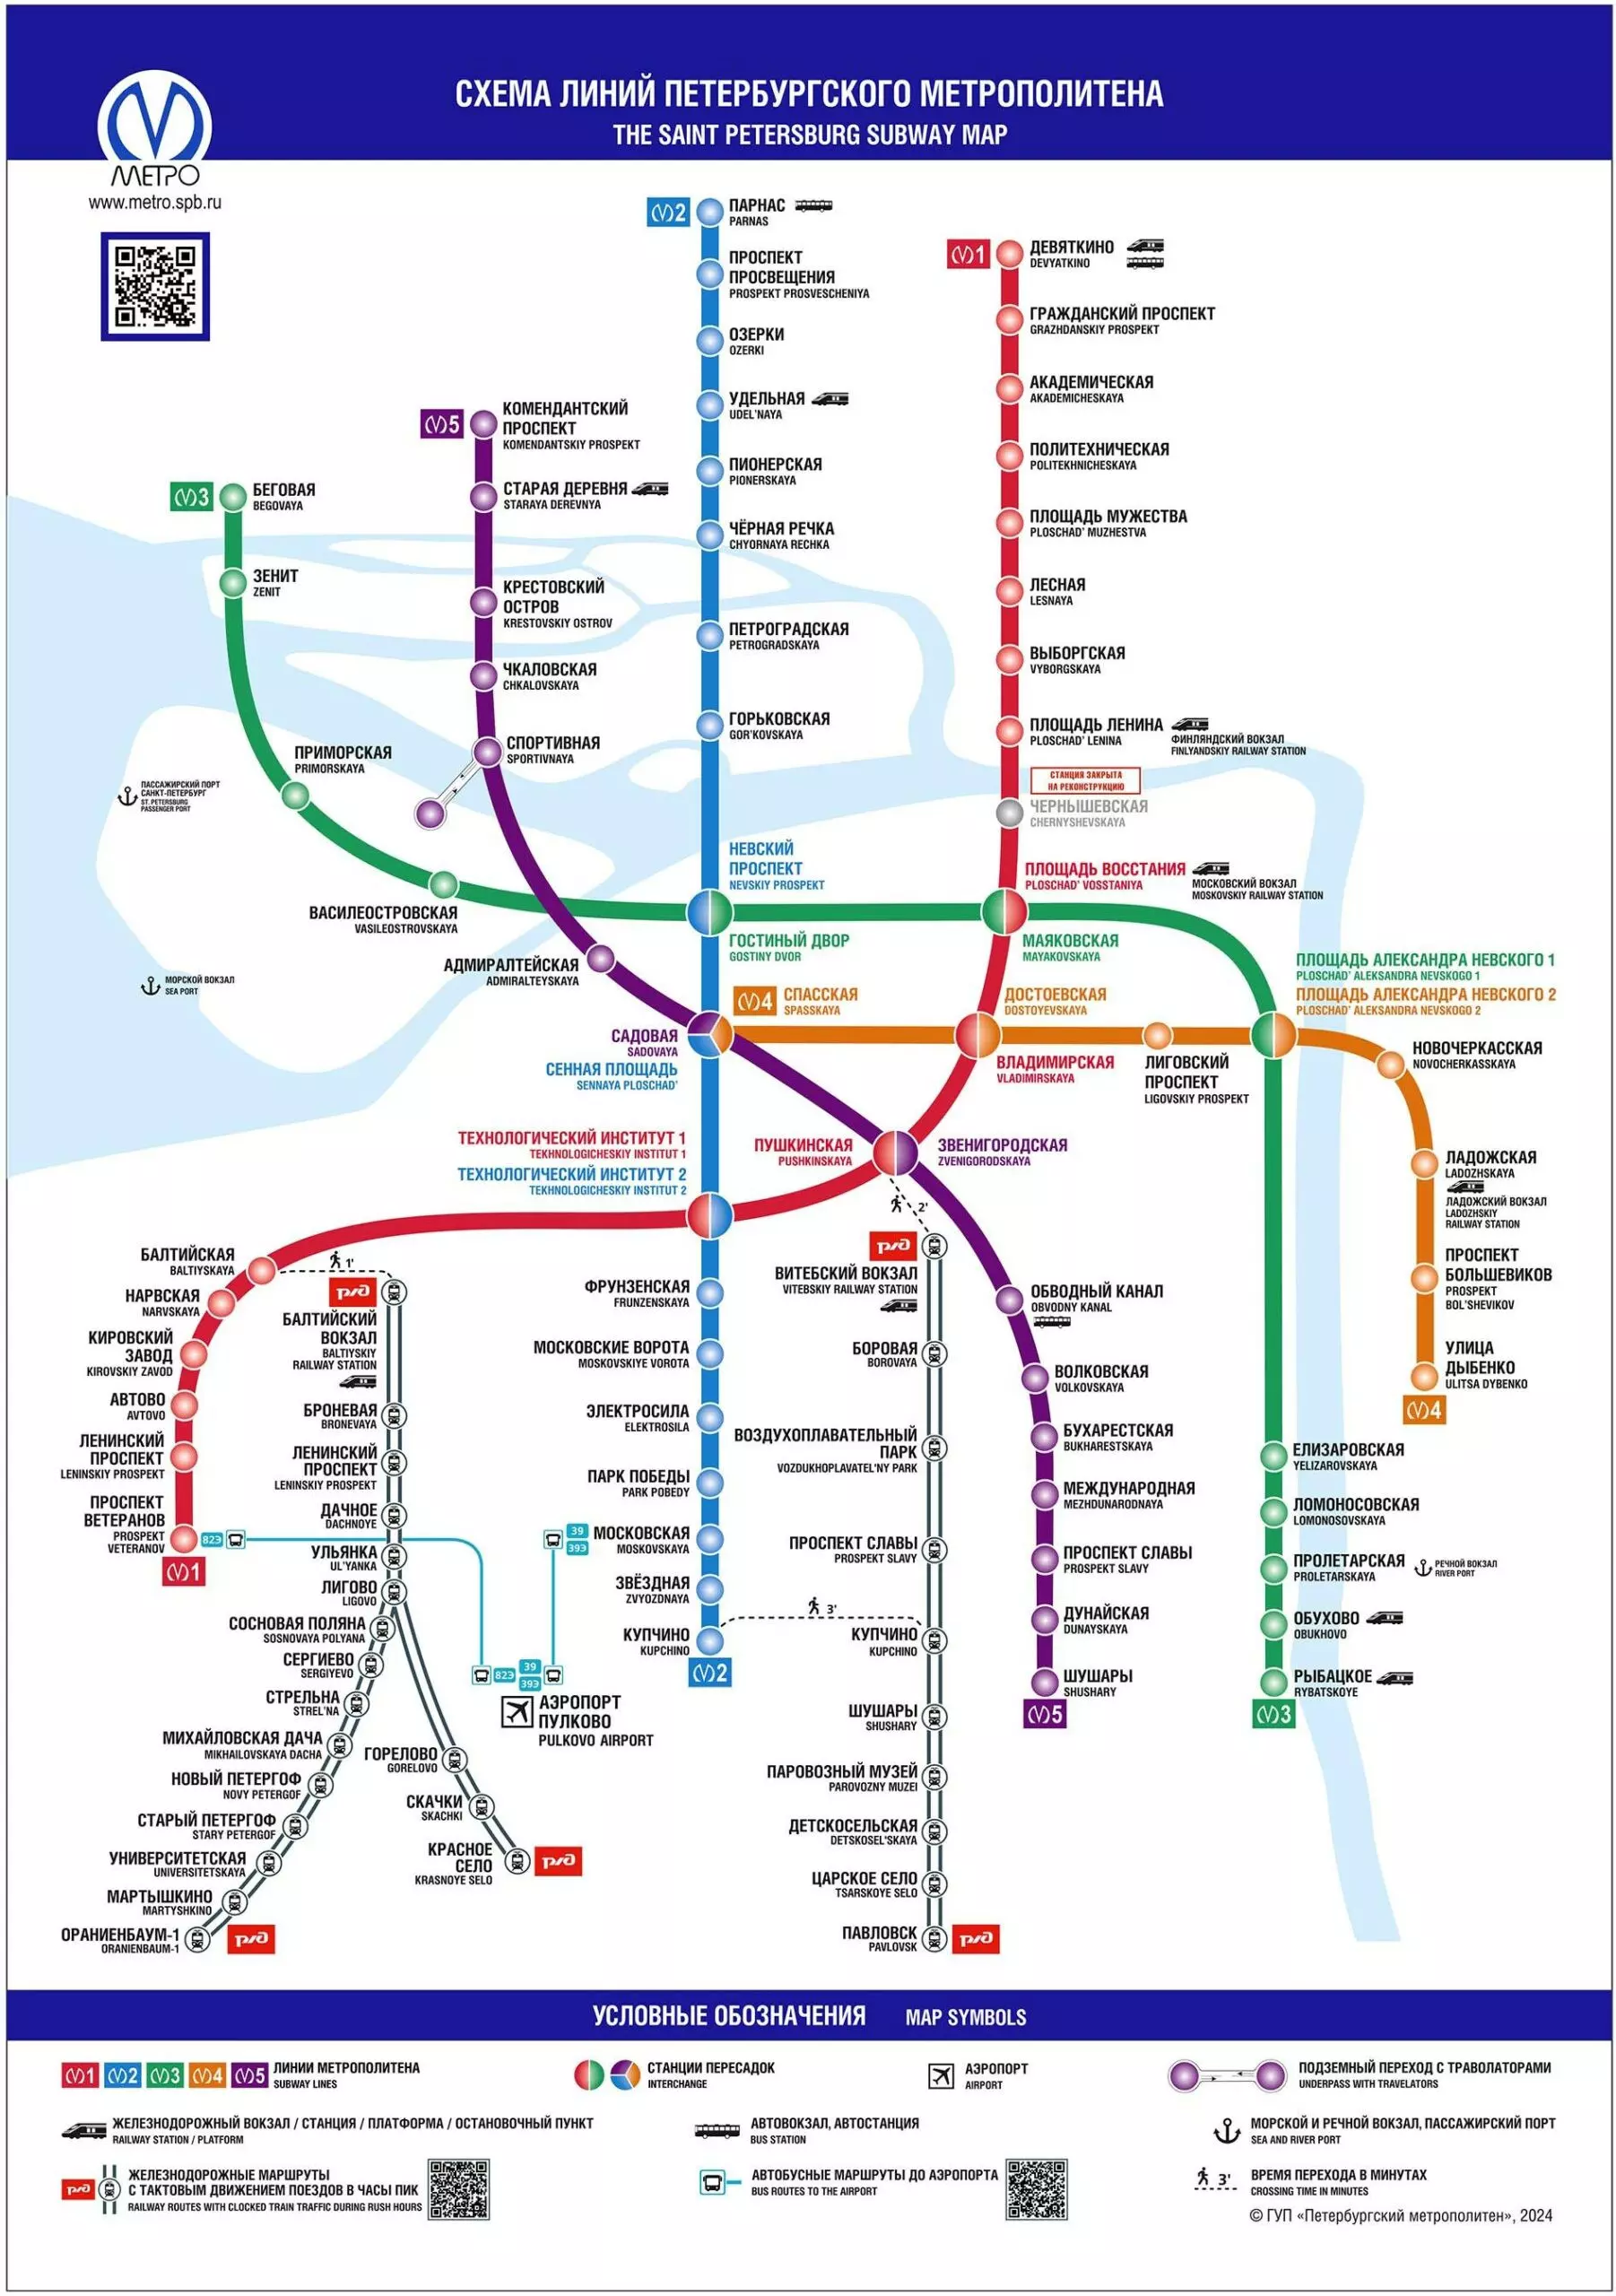 В петербургском метрополитене появятся новые карты